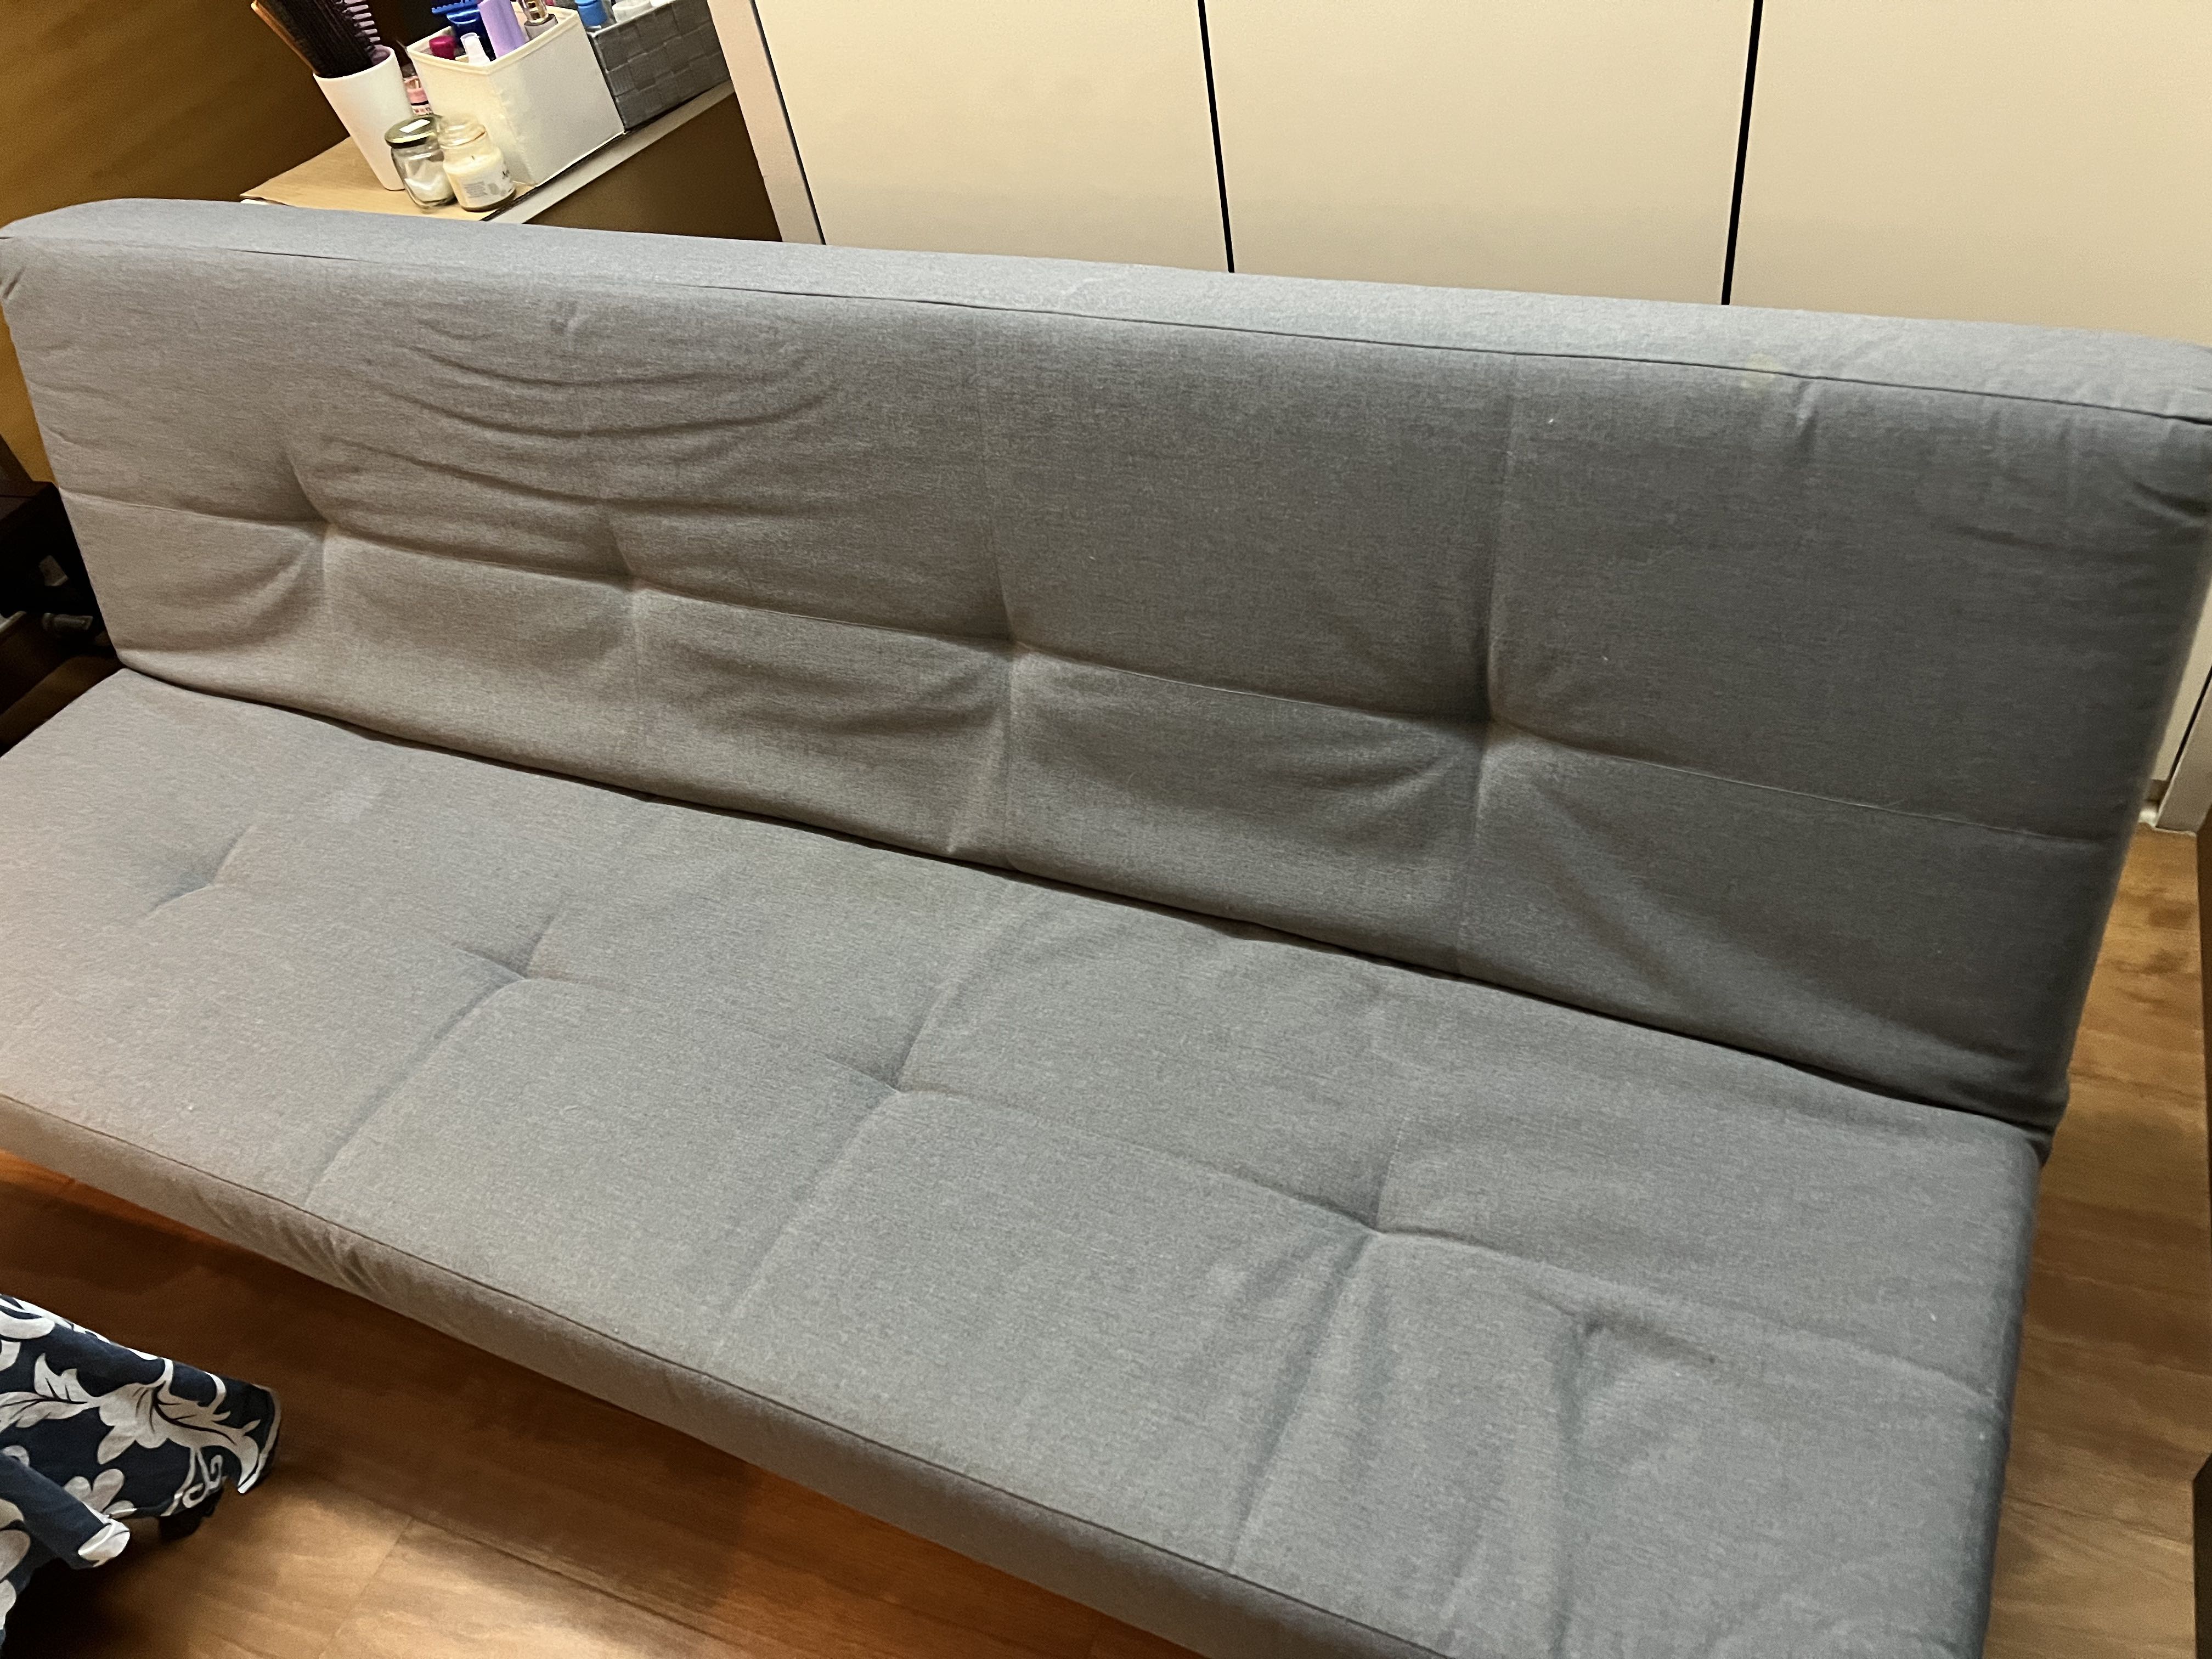 balkarp sofa bed assembly